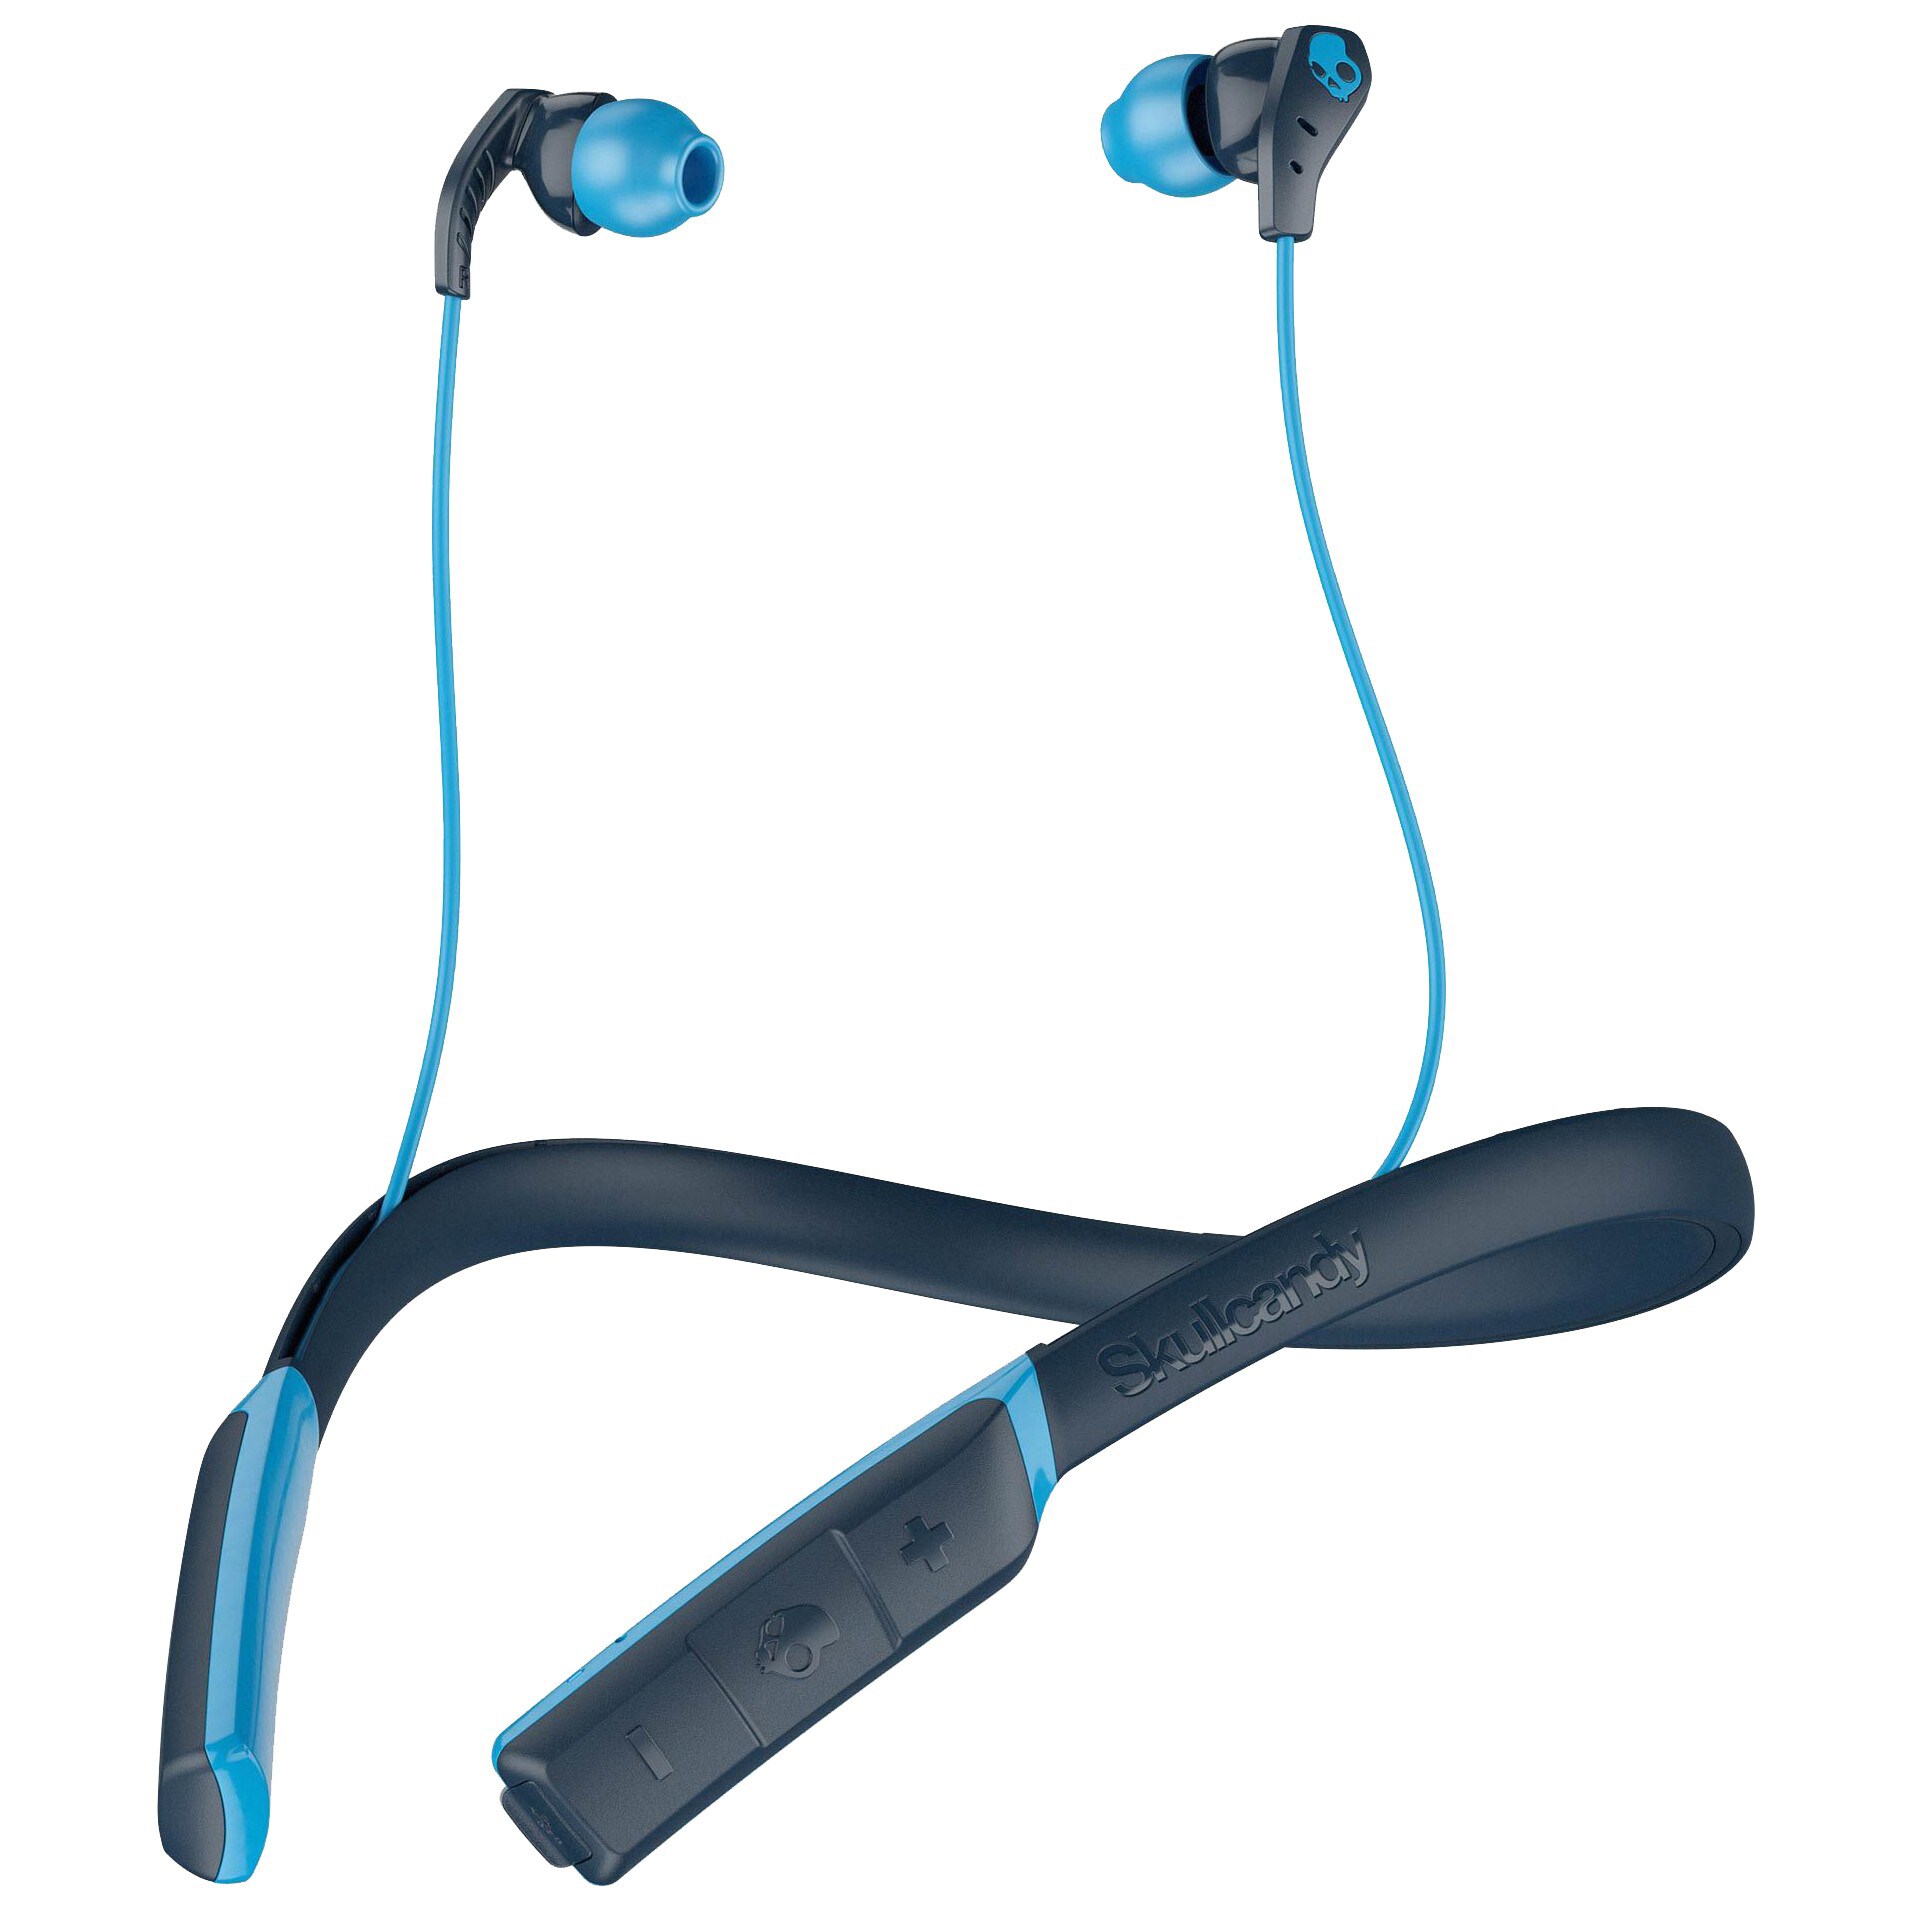 Skullcandy Method trådlösa in-ear hörlurar (blå) - Elgiganten